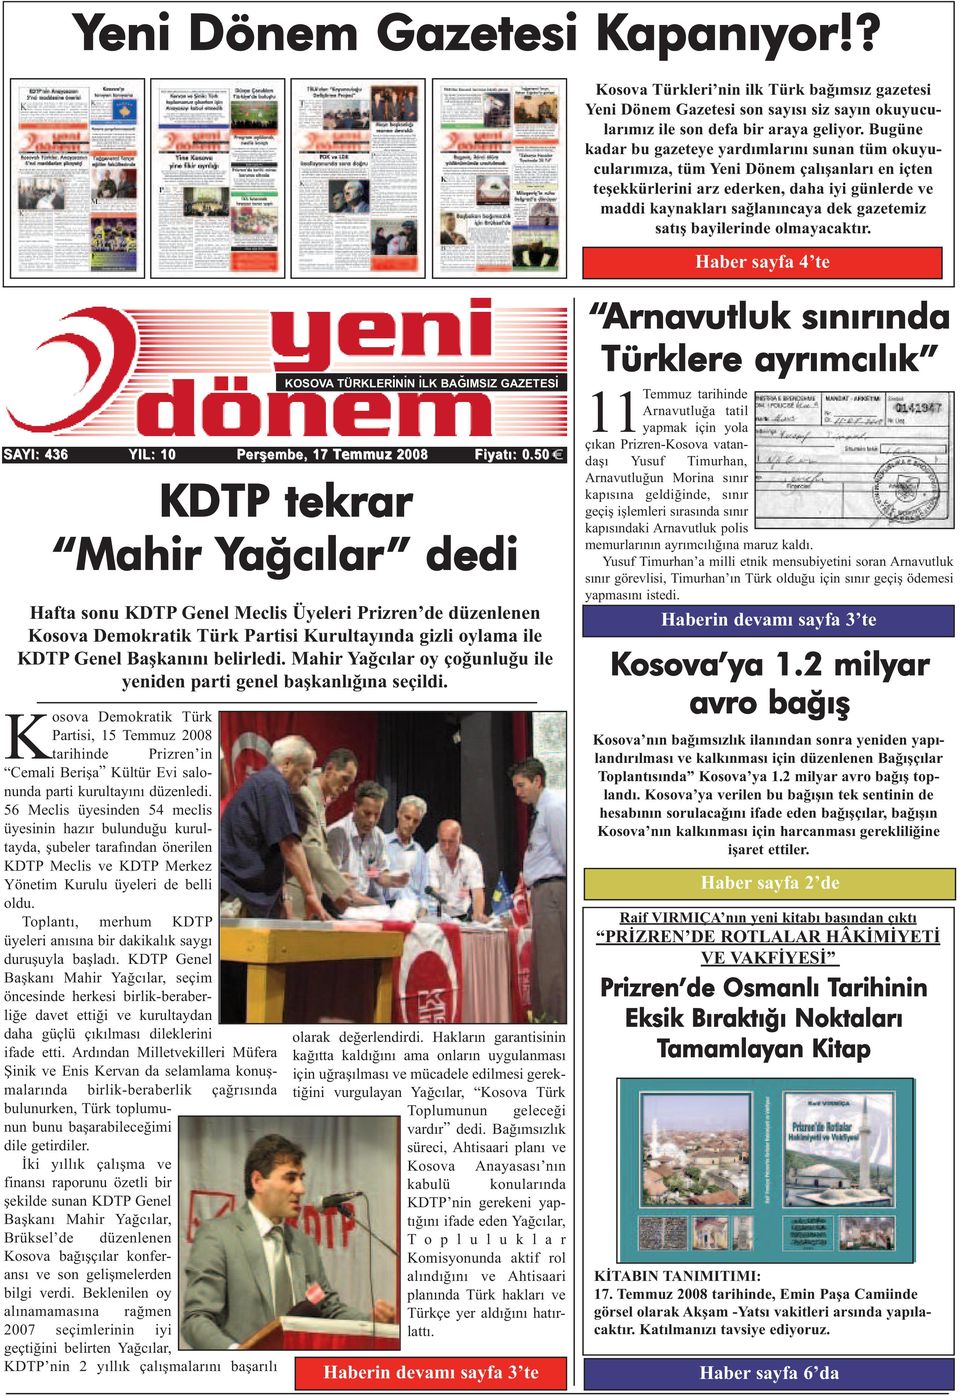 bayilerinde olmayacaktır. Haber sayfa 4 te SAYI: 436 YIL: 10 Kosova Demokratik Türk Partisi, 15 Temmuz 2008 tarihinde Prizren in Cemali Berişa Kültür Evi salonunda parti kurultayını düzenledi.